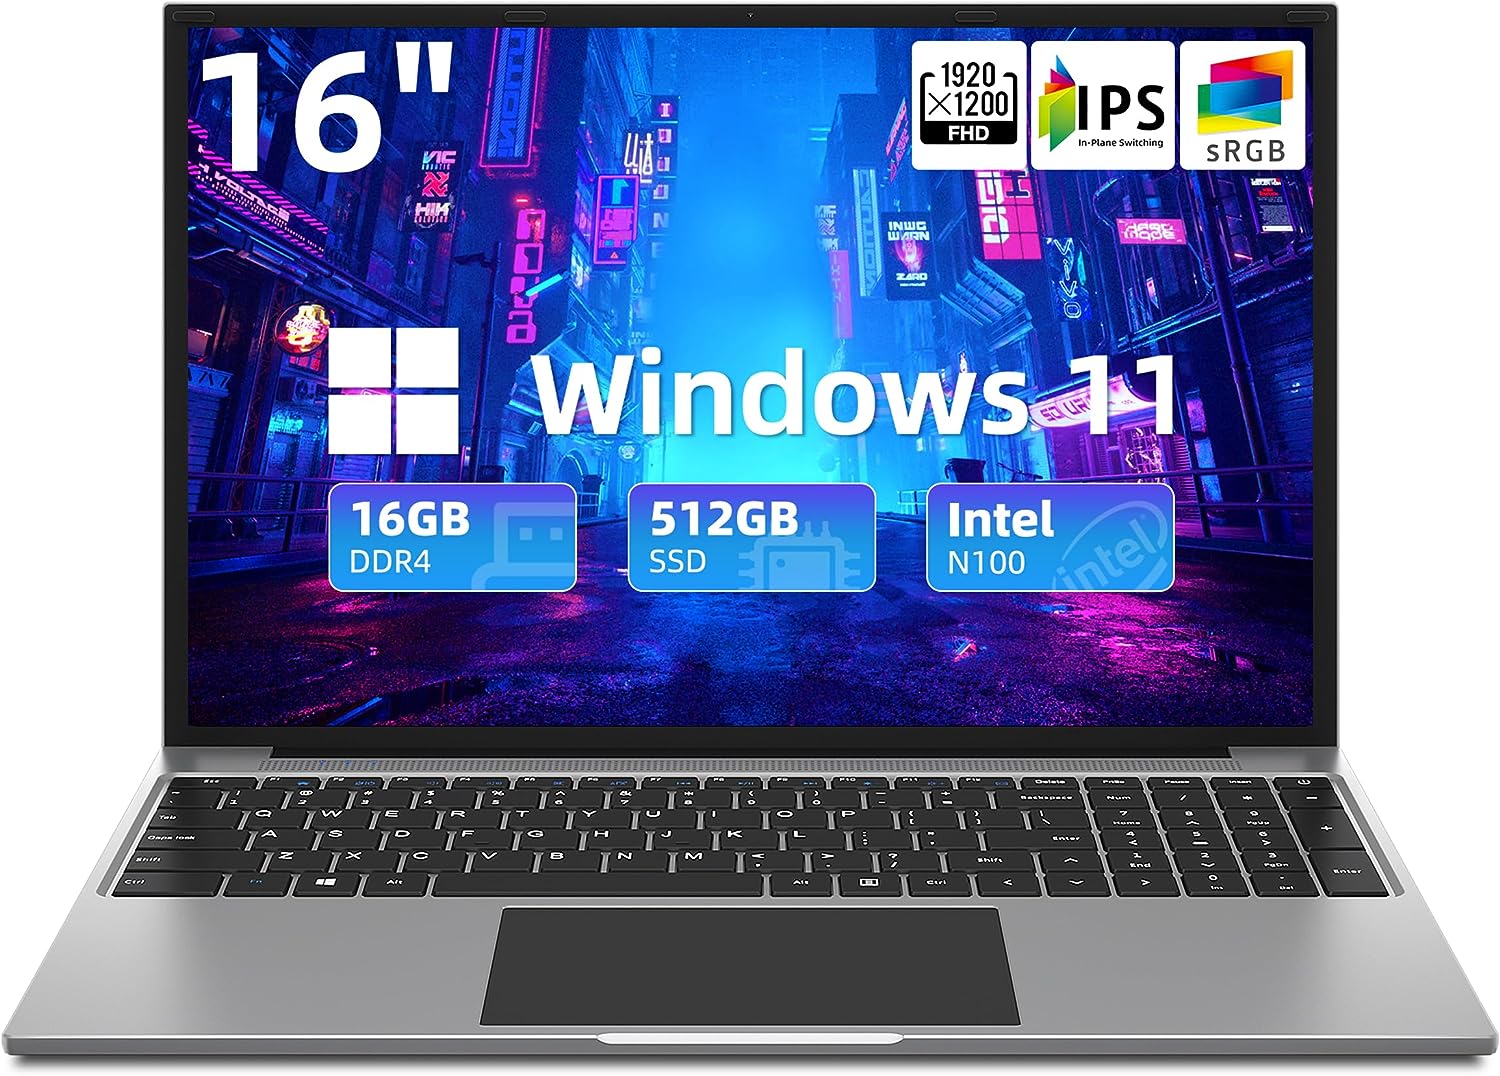 jumper Laptop, 16GB RAM 512GB SSD, Quad-Core Intel N100 Processor, 16